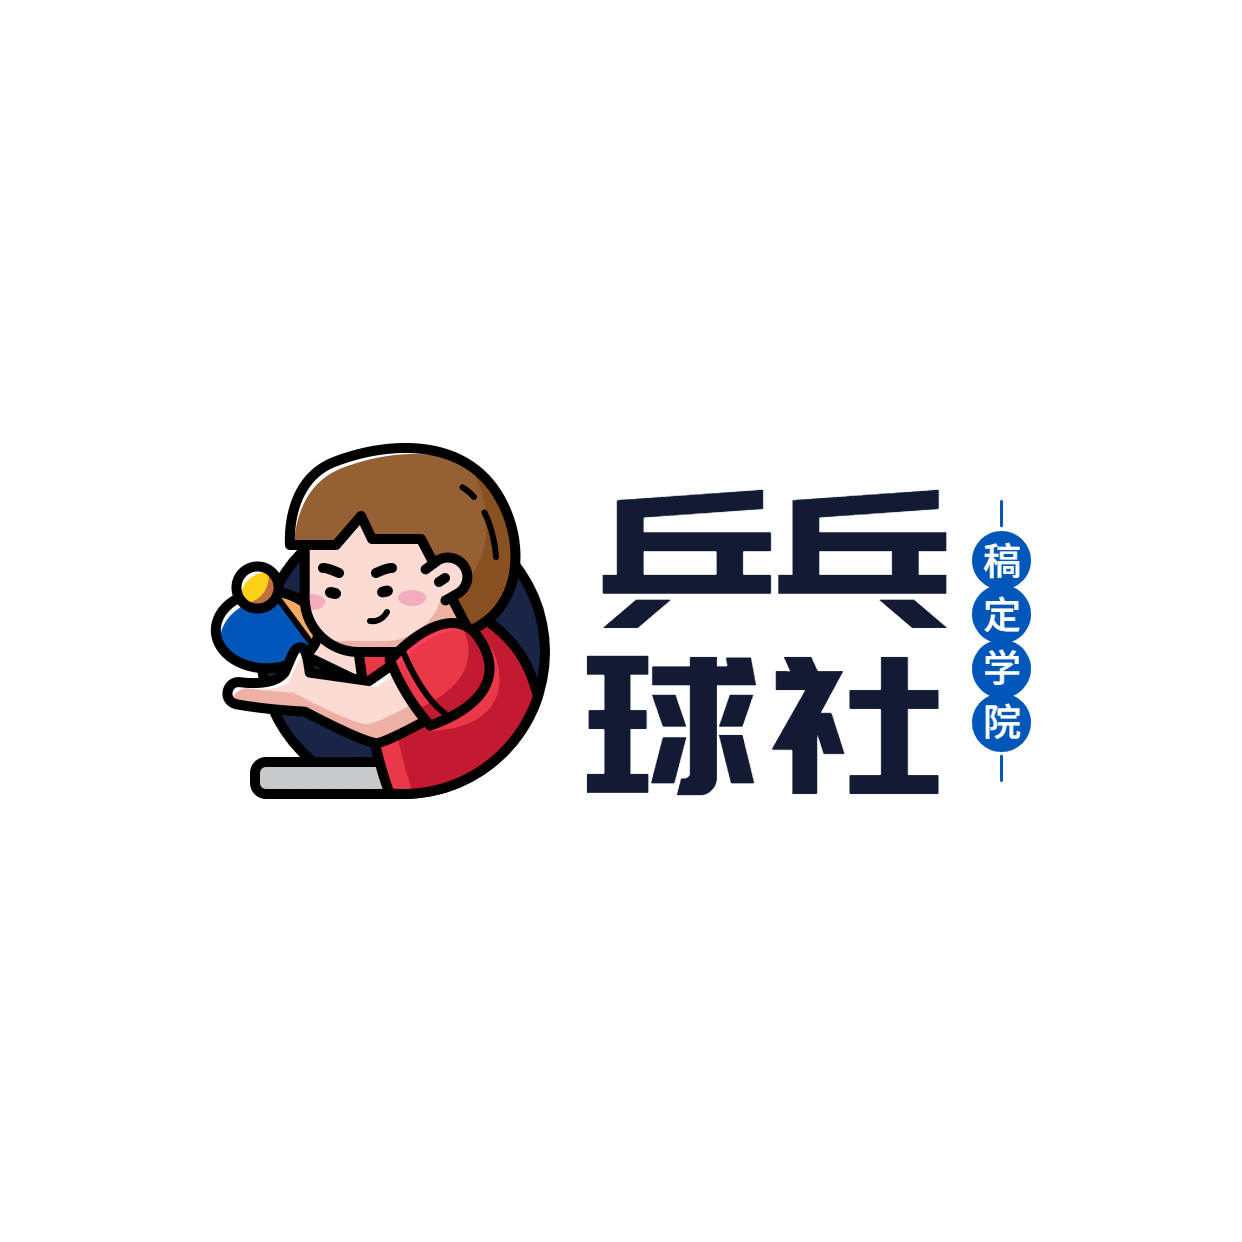 教育培训乒乓球班简约清新logo预览效果